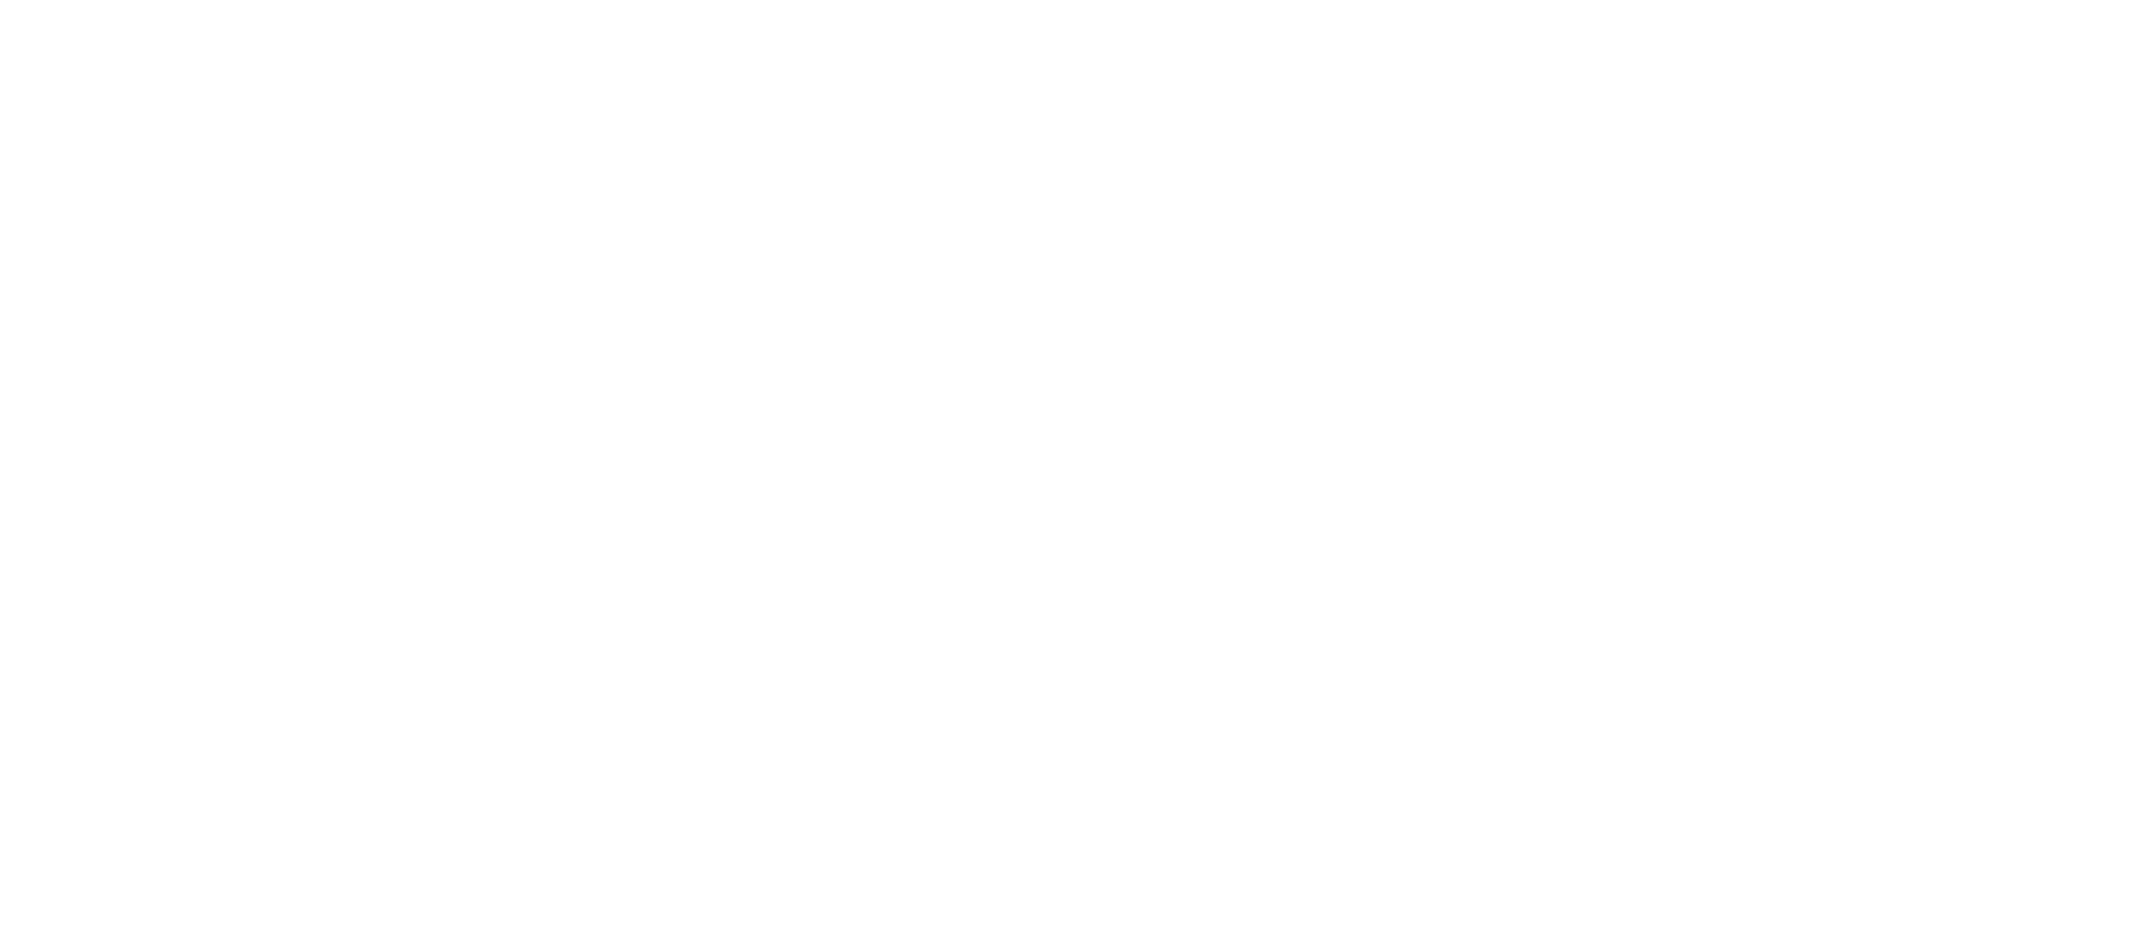 Mobycheck